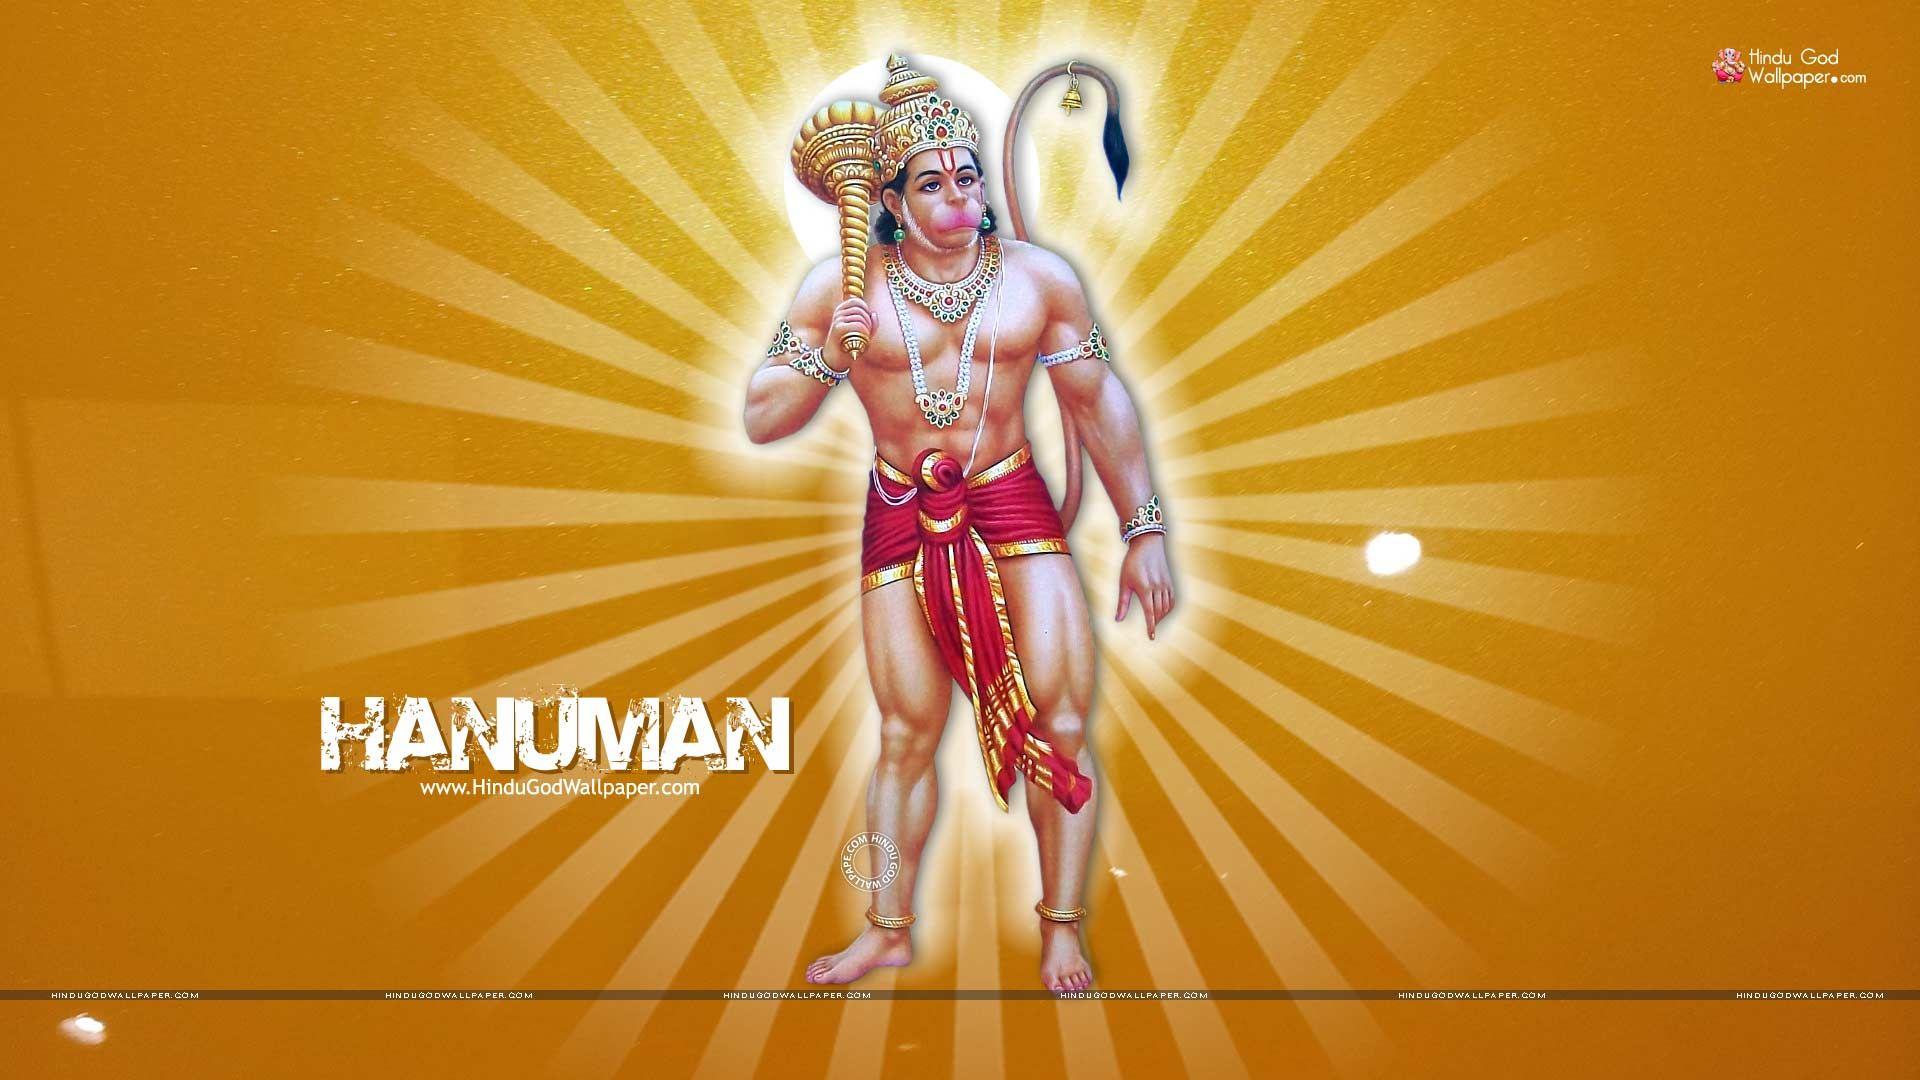 Lord Hanuman by Cjb1981 on DeviantArt